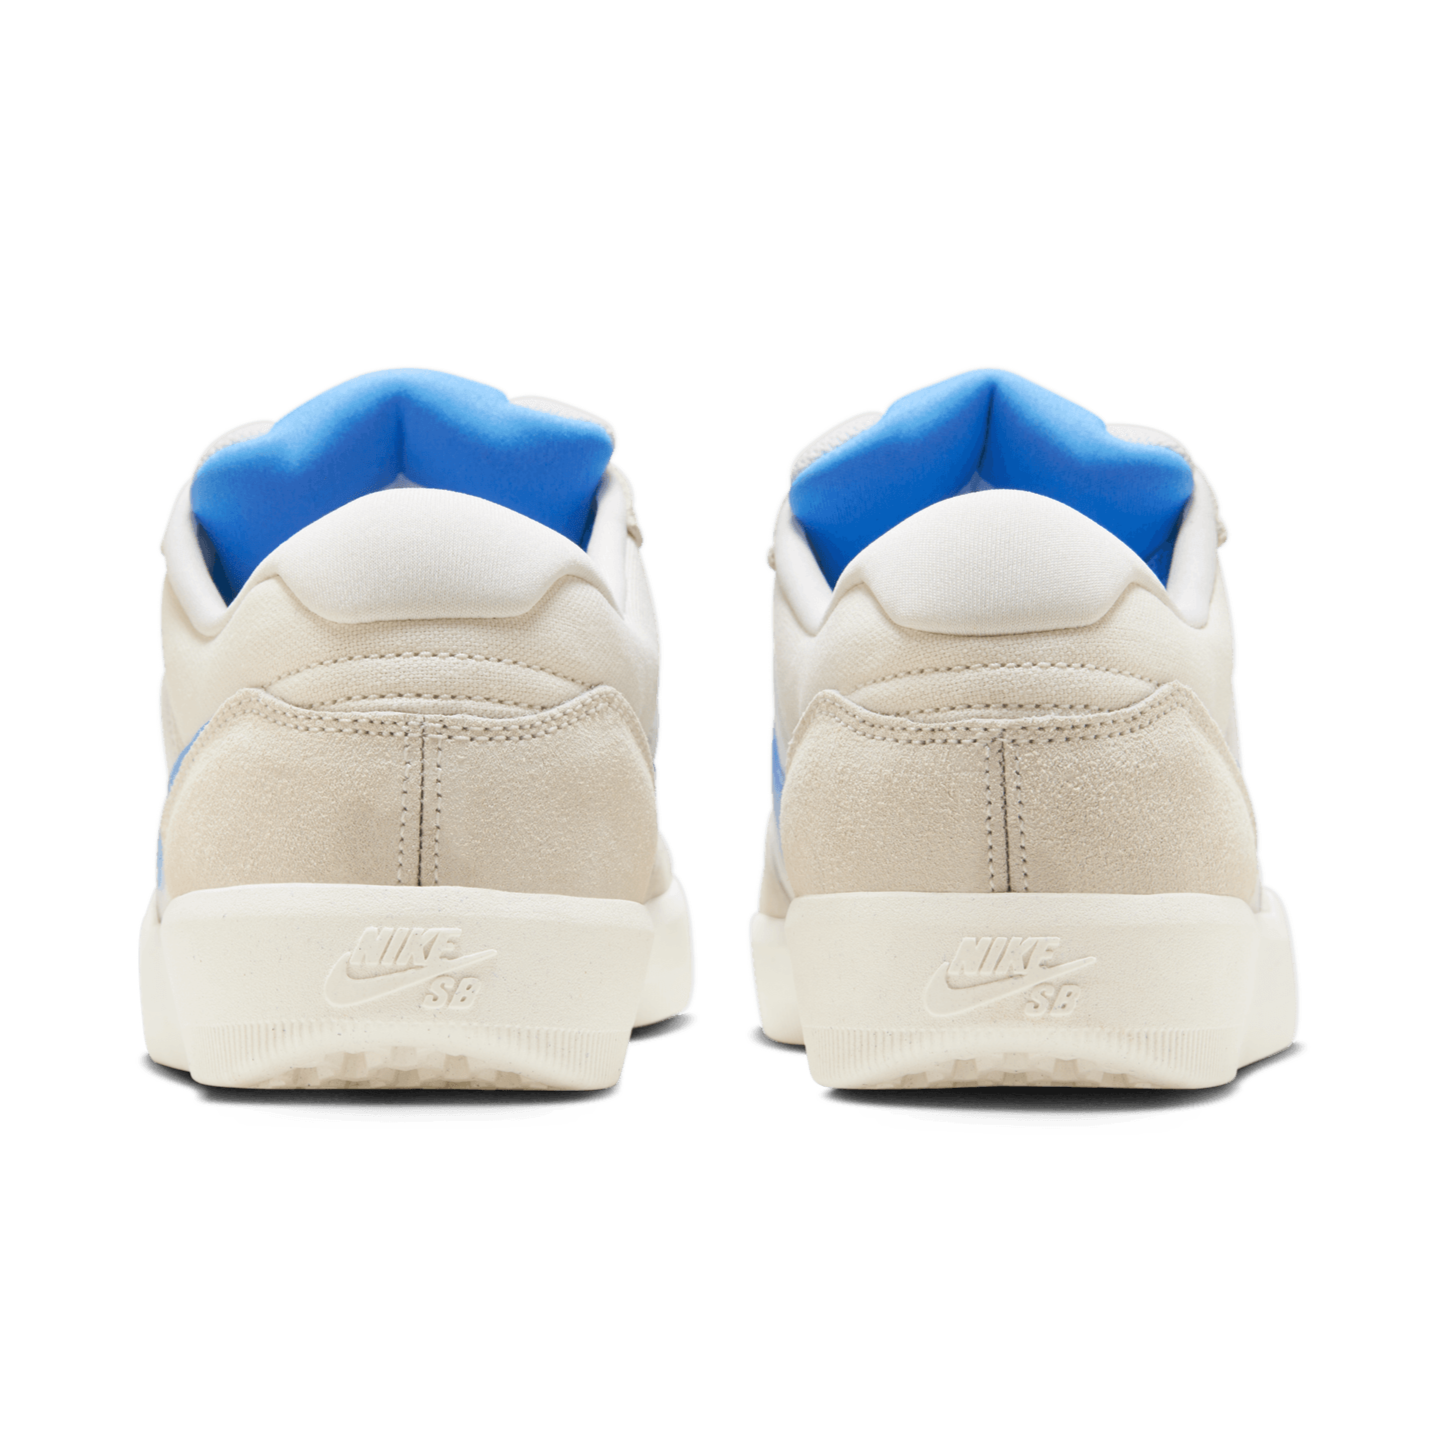 Summit White/University Blue Force 58 Nike SB Skate Shoe Back